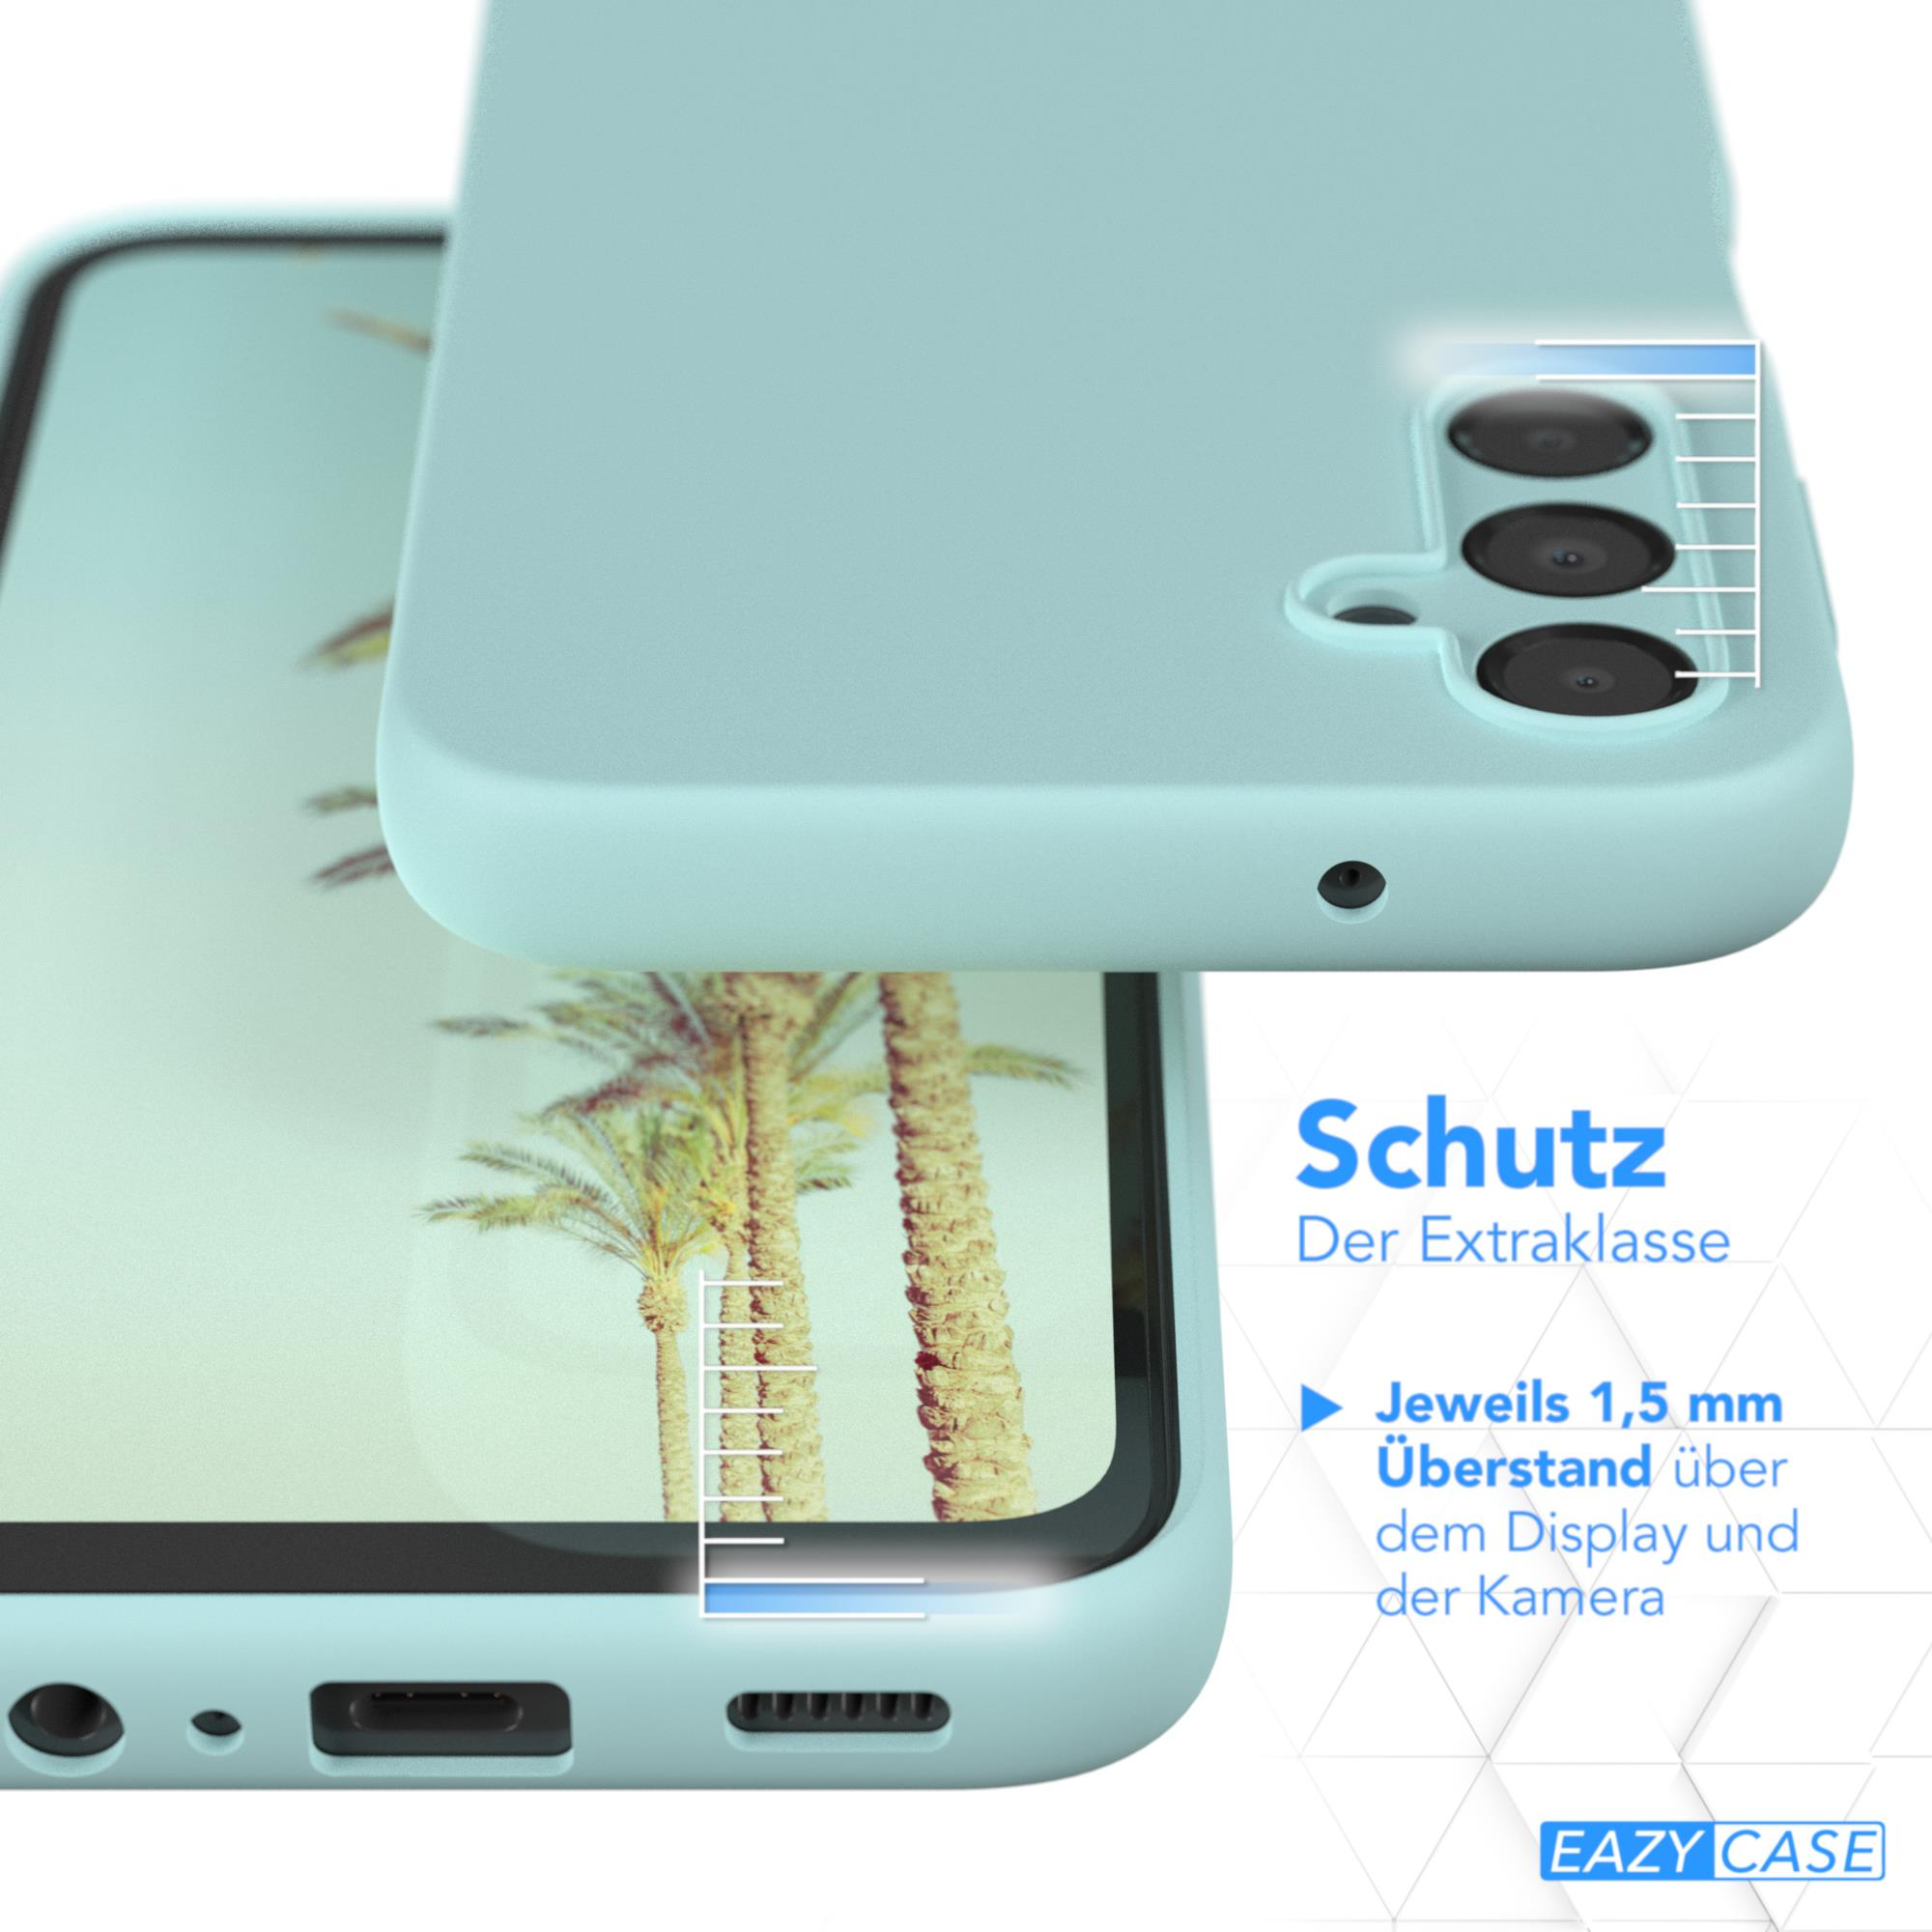 Backcover, Mint Silikon 5G, A14 Grün Samsung, EAZY Handycase, Premium Galaxy CASE